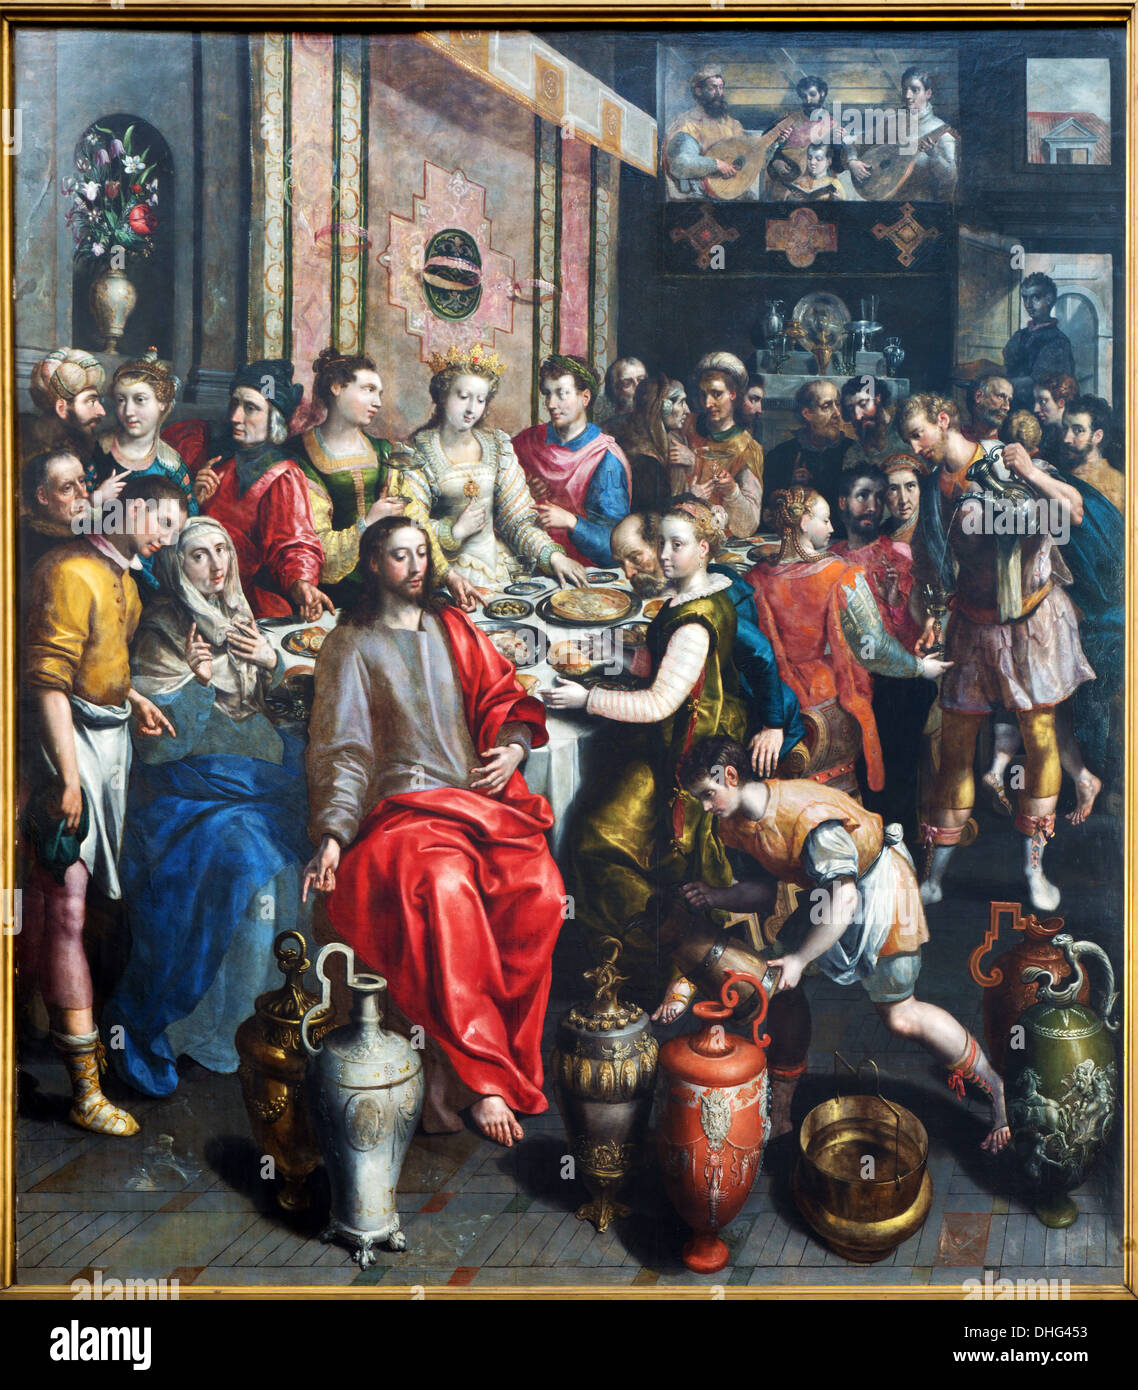 Anversa - vernice del miracolo di Cana scena da Maerten De Voos dall'anno 1597 nella cattedrale di Nostra Signora Foto Stock